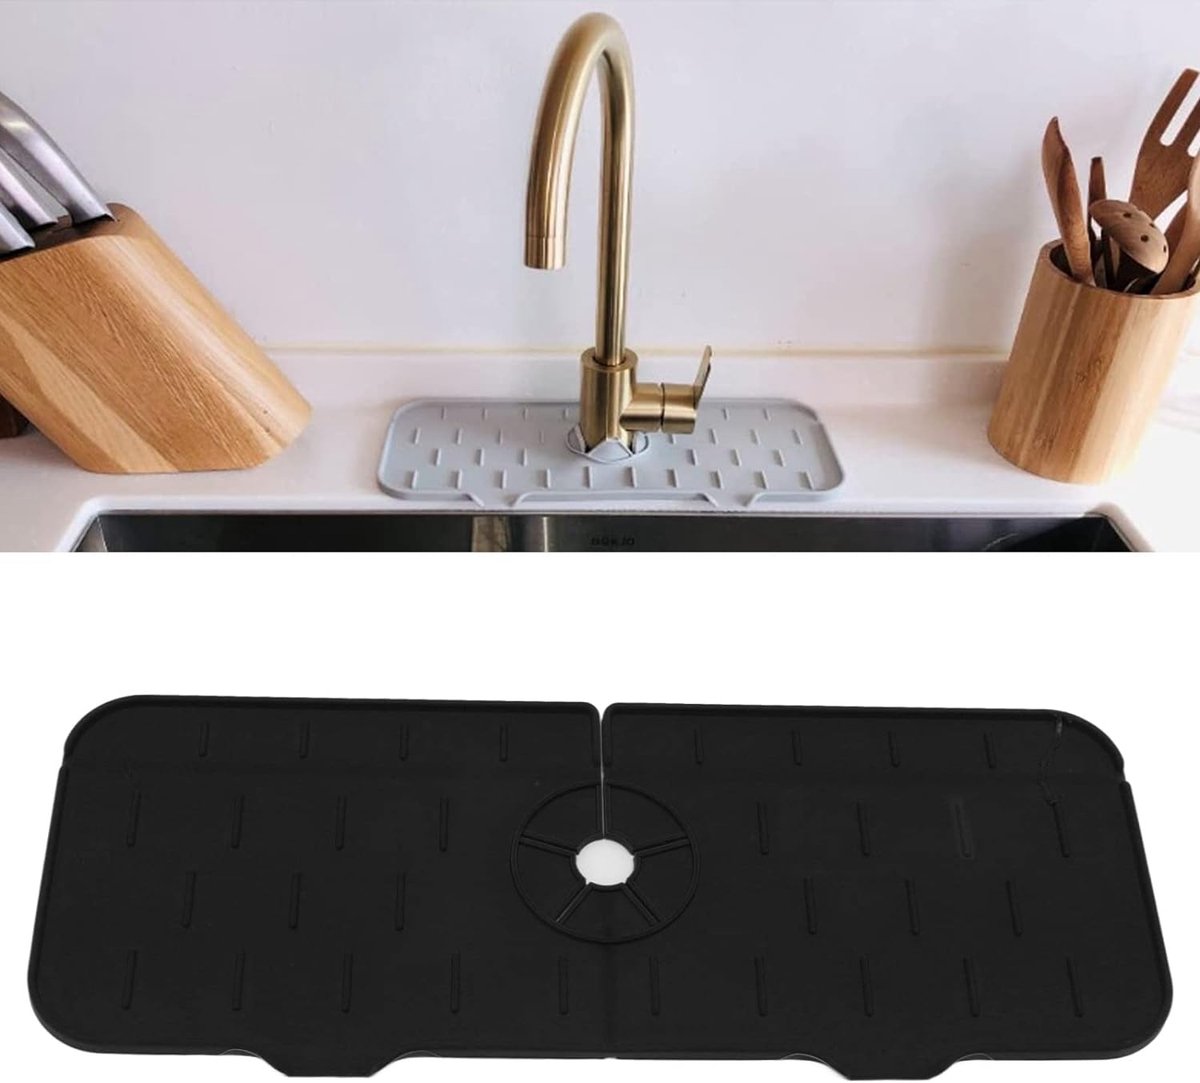 Spatwaterdichte siliconen wastafelkraanmat - Herbruikbaar en duurzaam - Eenvoudige installatie voor badkamer - BPA-vrij (zwart)